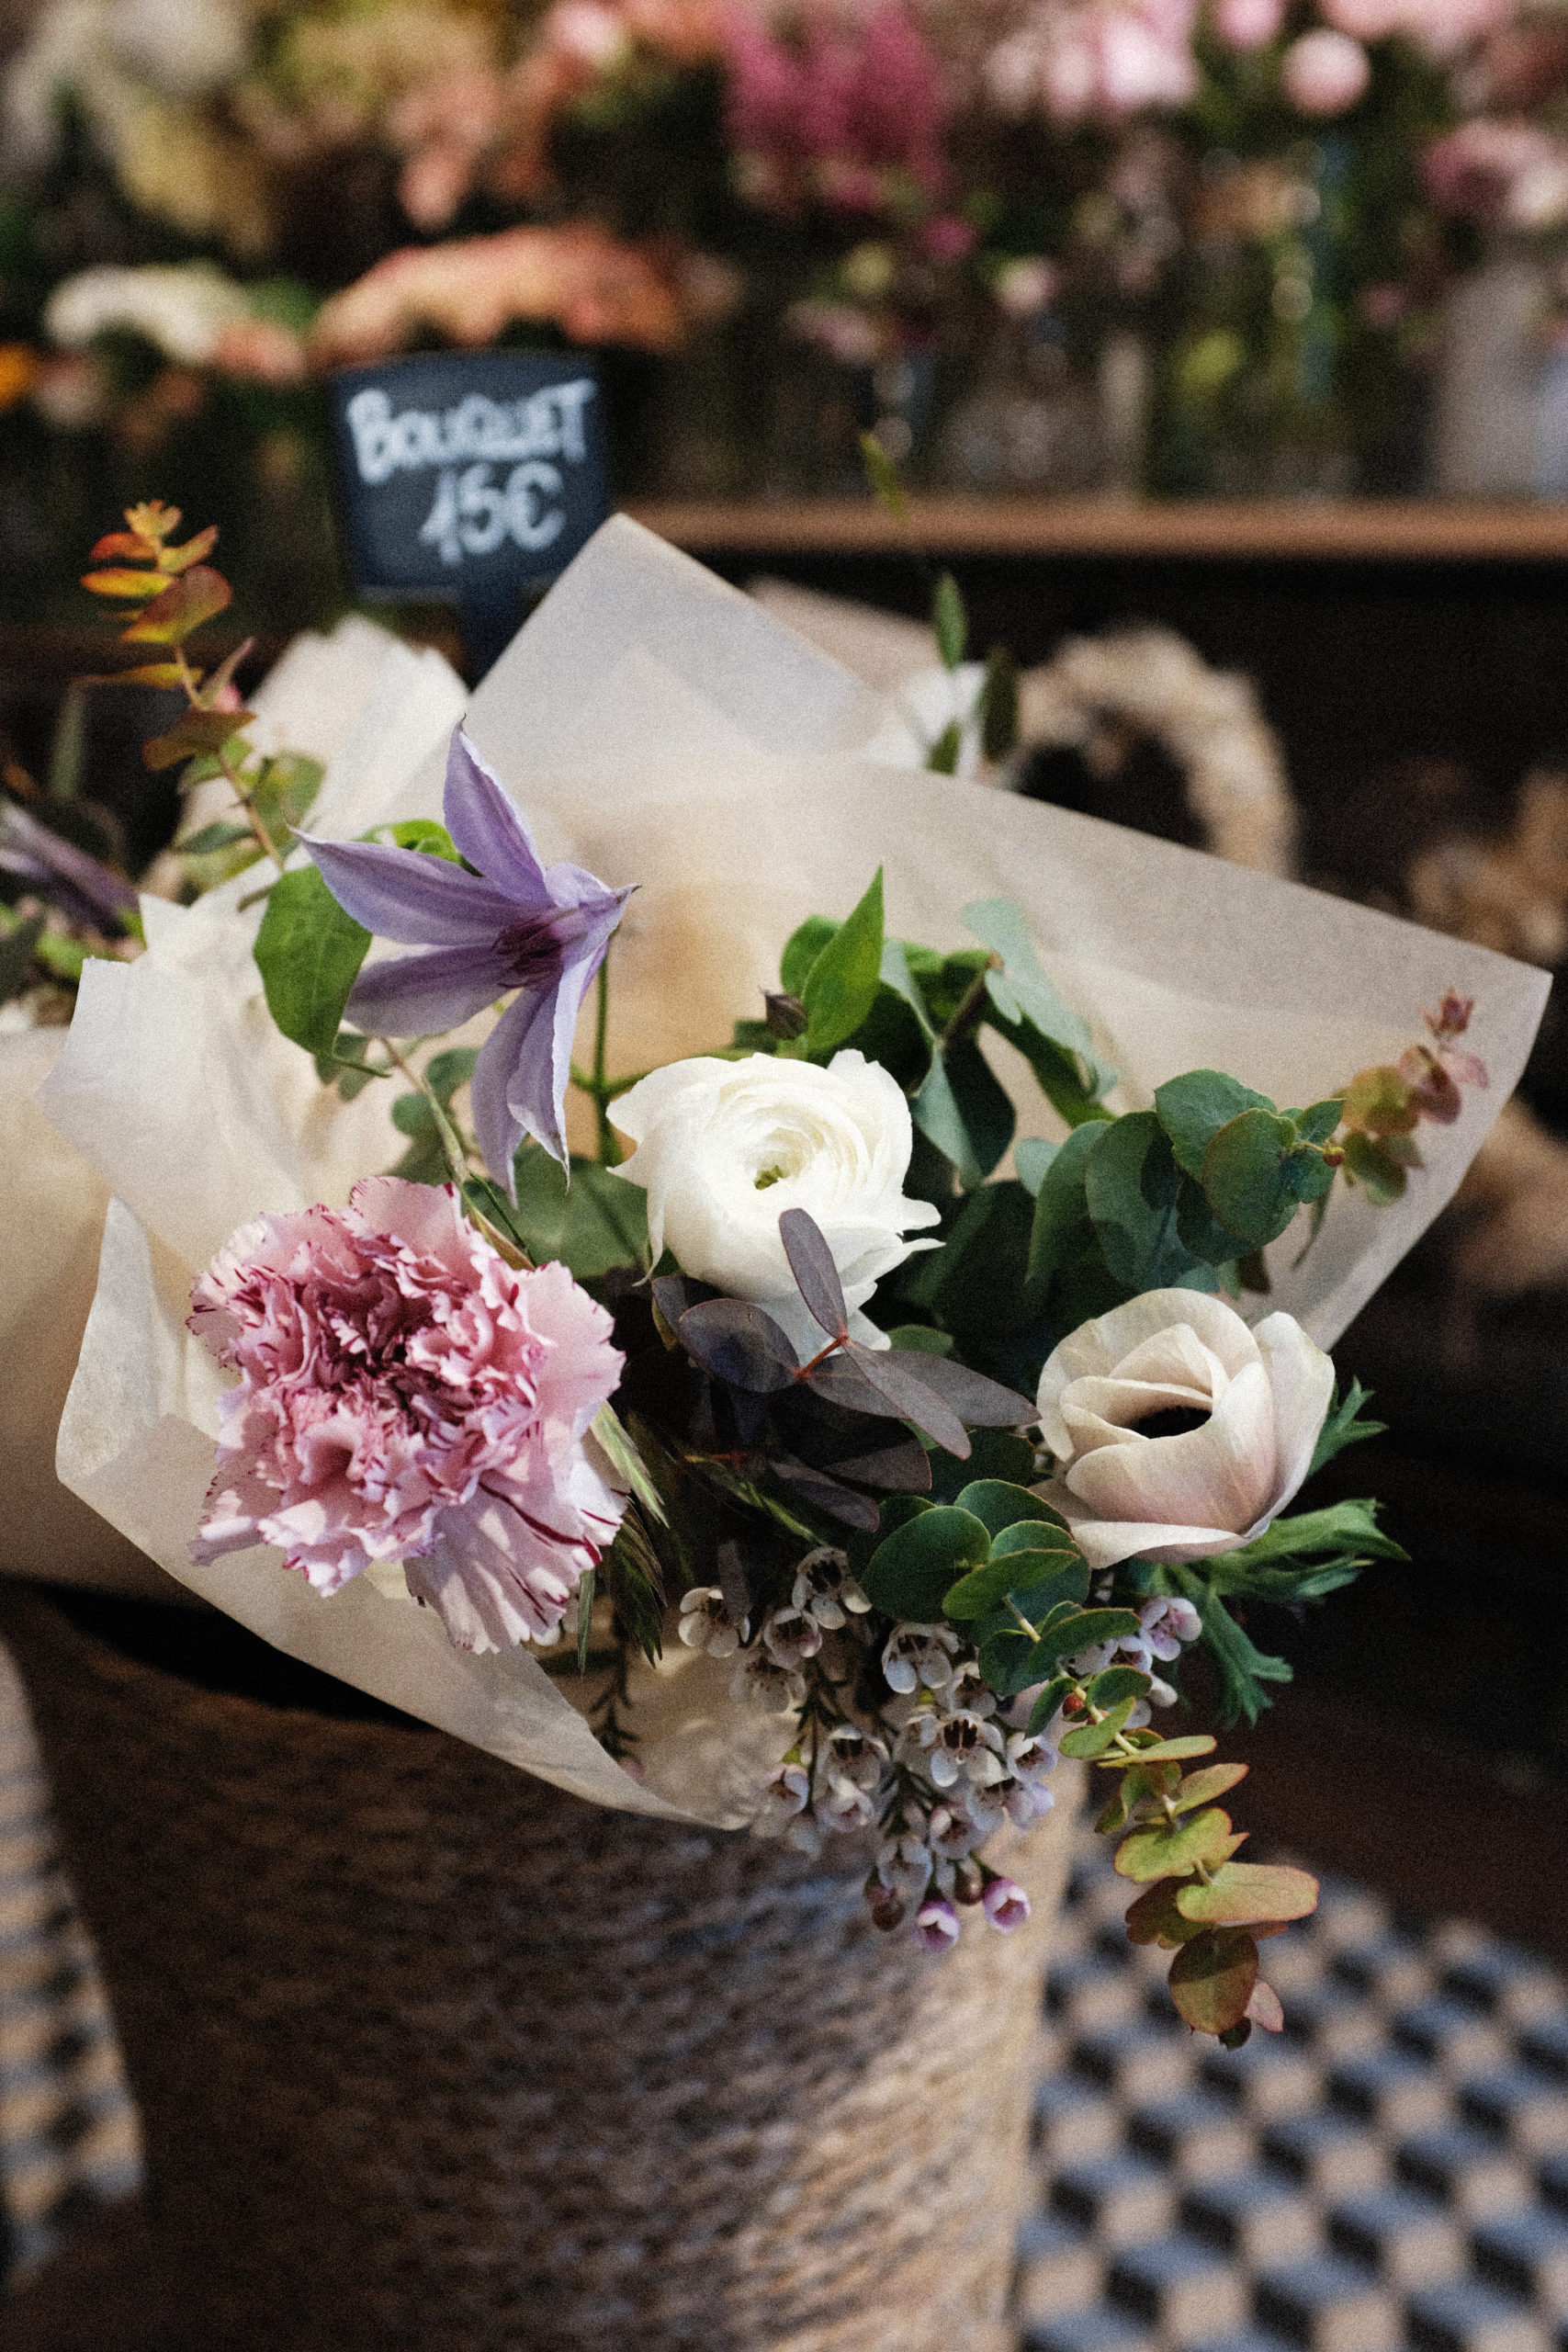 Composition de fleurs fraîches et emballage soie (eucalyptus, clématite, œillet, renoncule blanche, anémone mistral, wax flower), valeur 15€